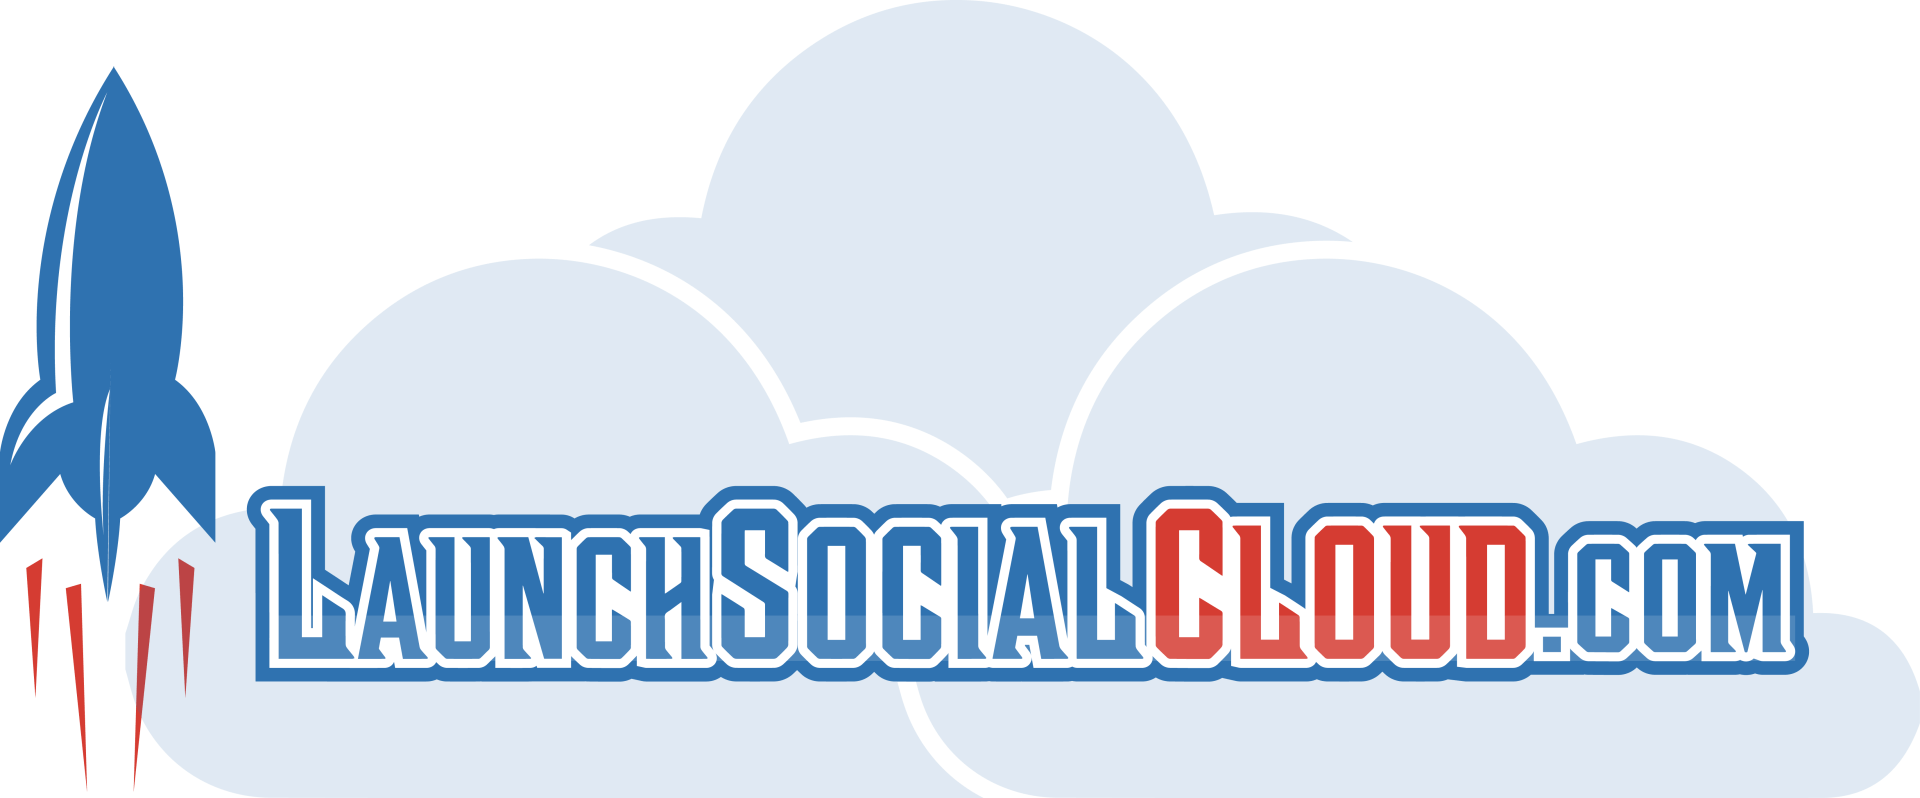 Launch Social Cloud